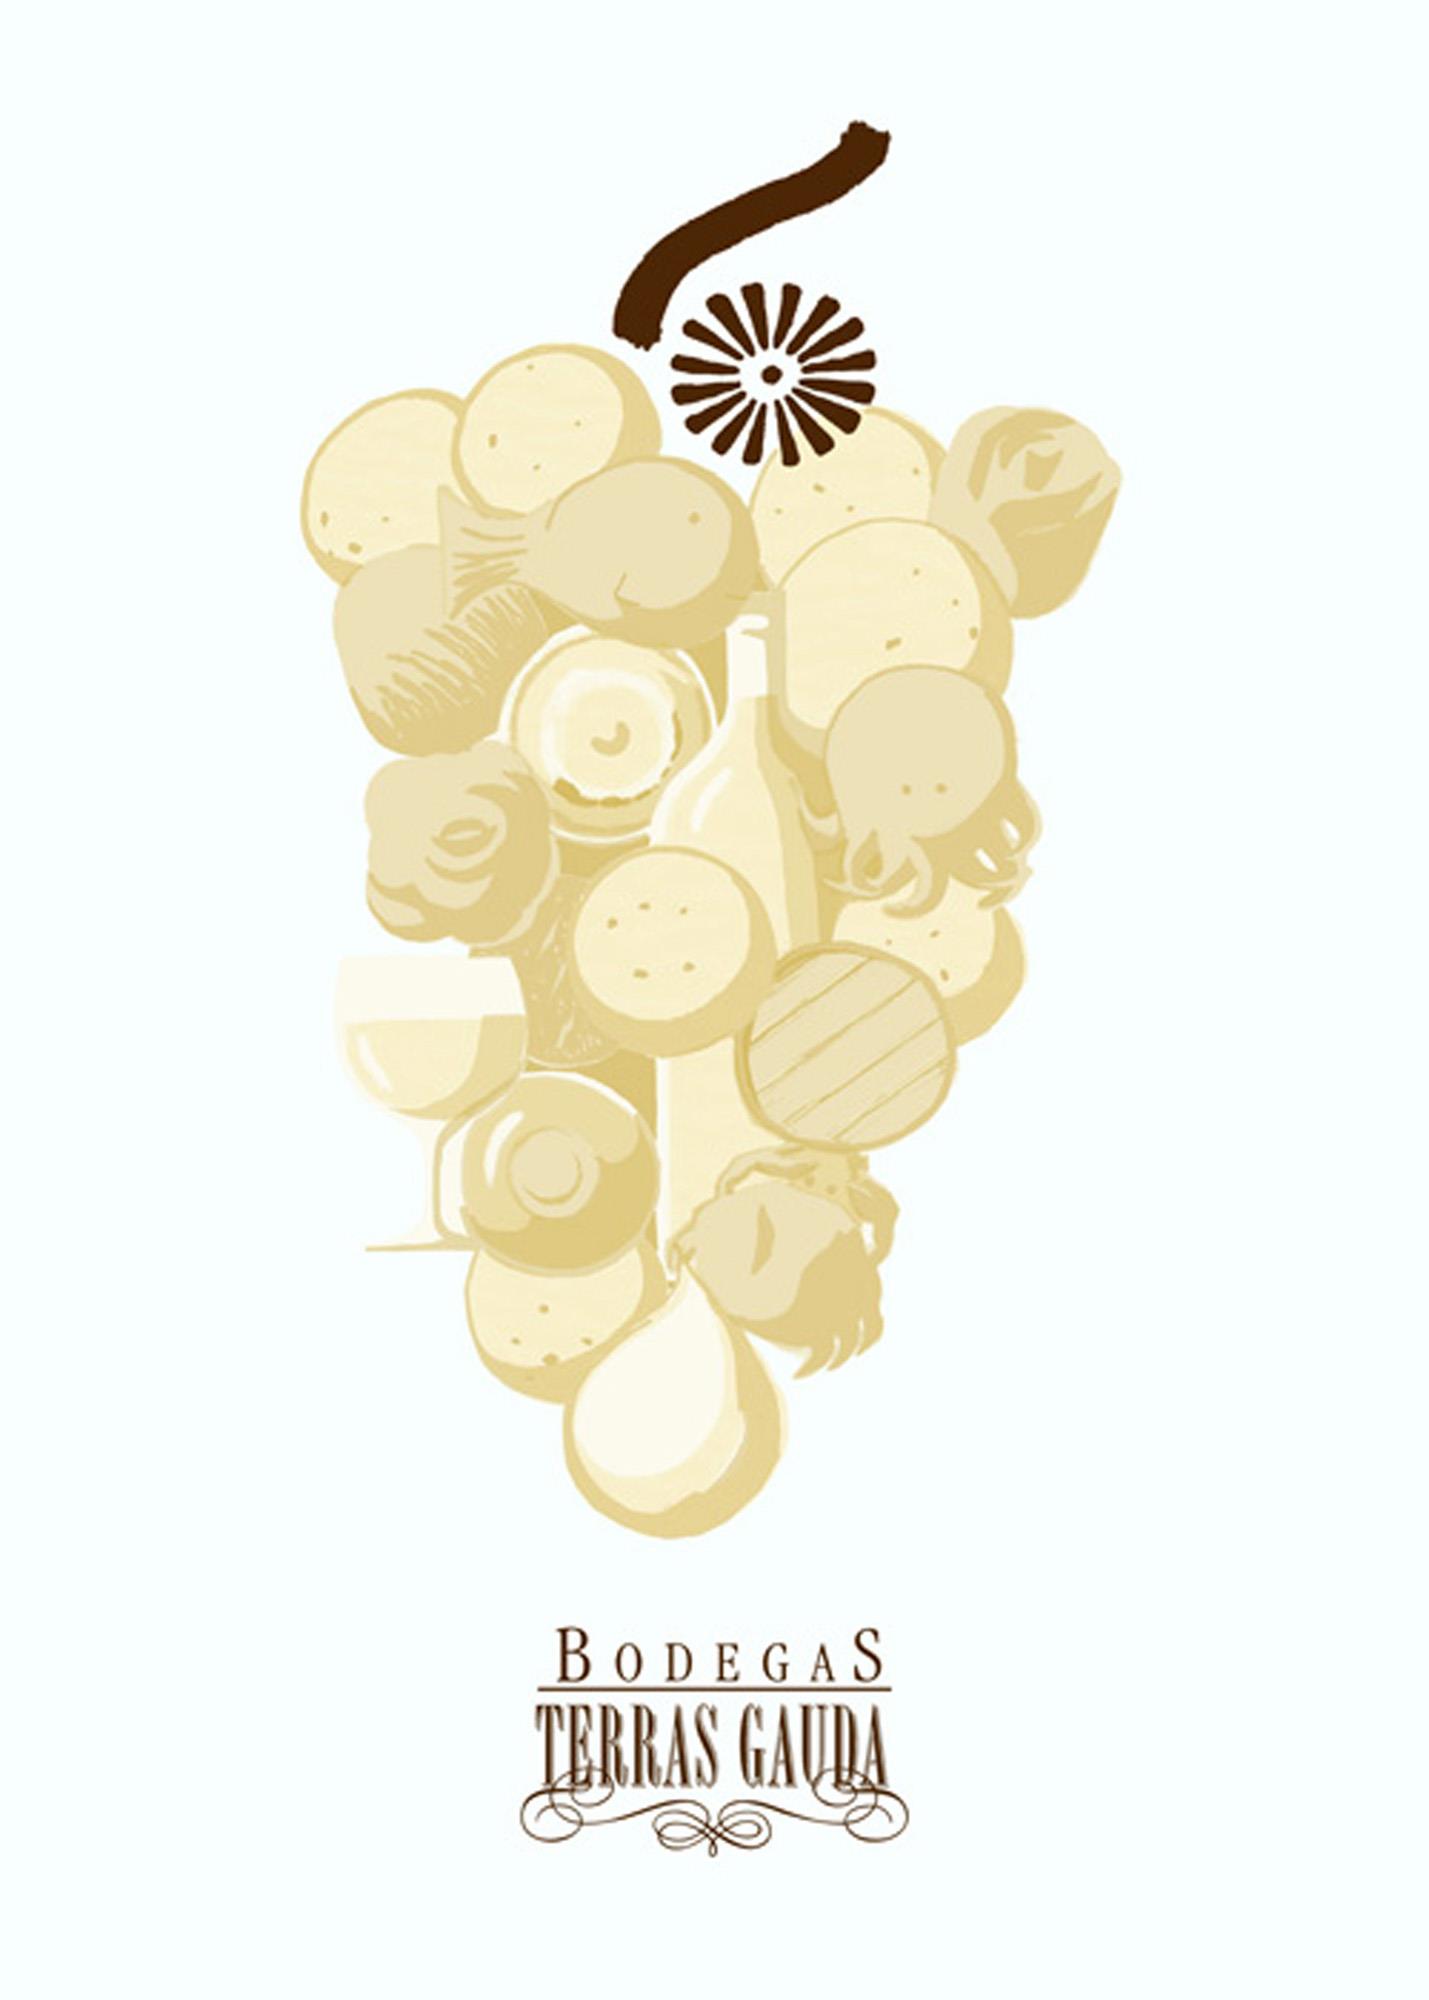 Cartel para las bodegas Terras Gauda, racimo de uvas. Cada uva es un elemento relacionado con Galicia y el vino.